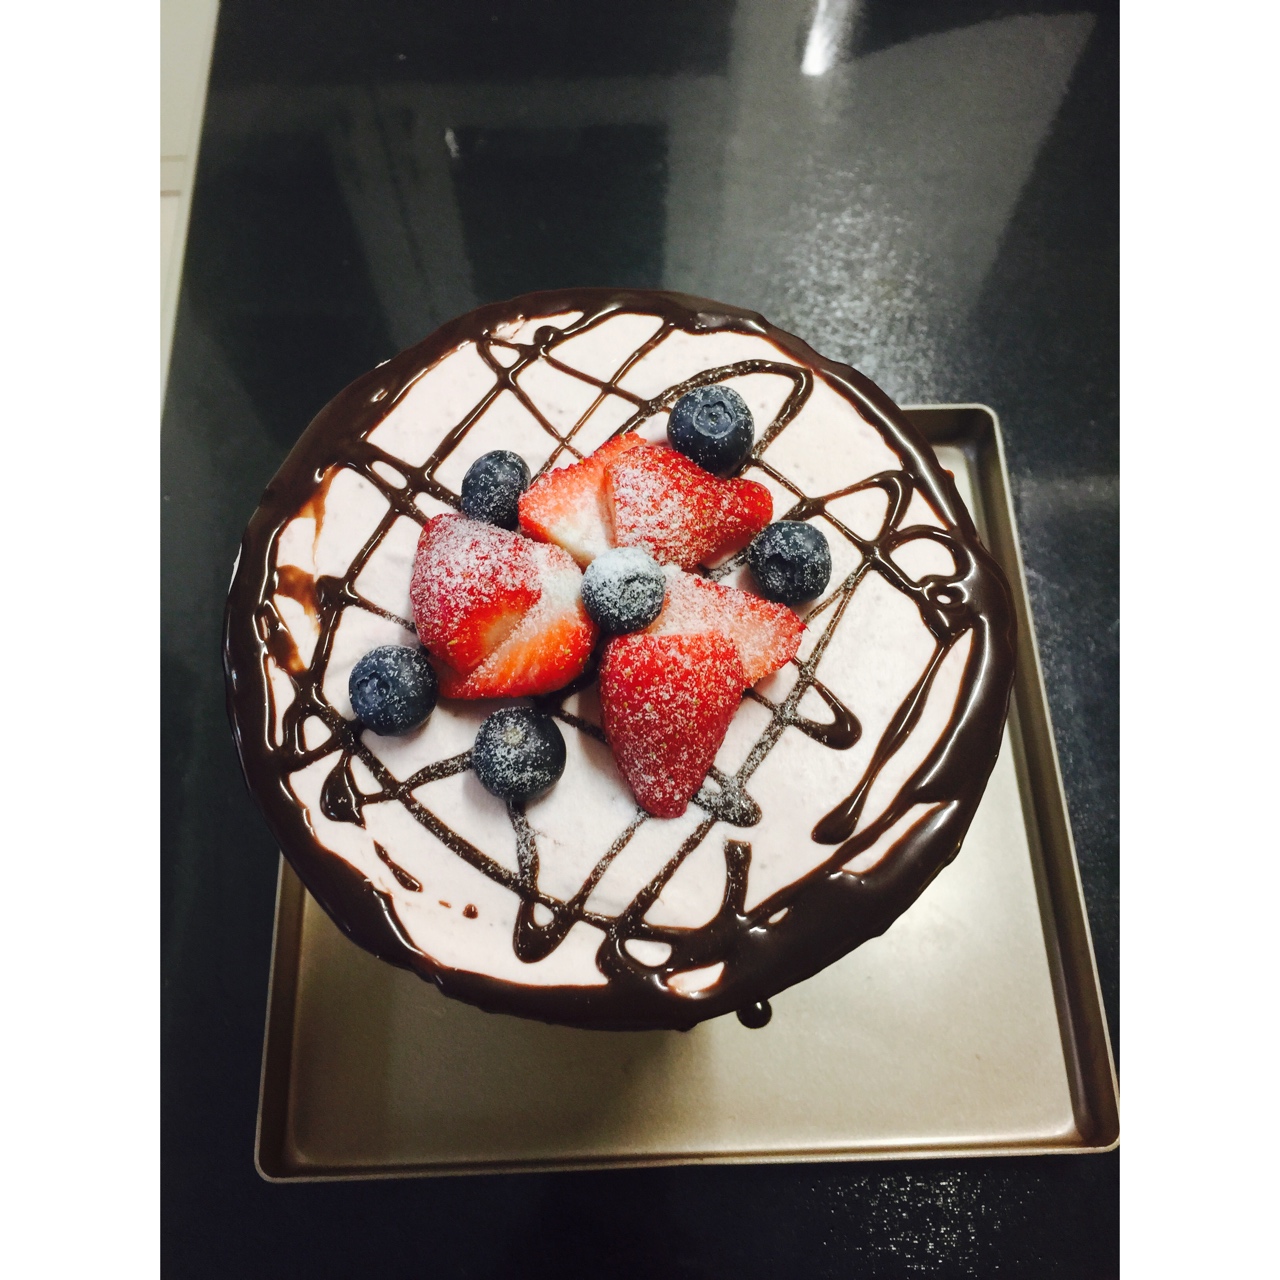 巧克力草莓慕斯蛋糕